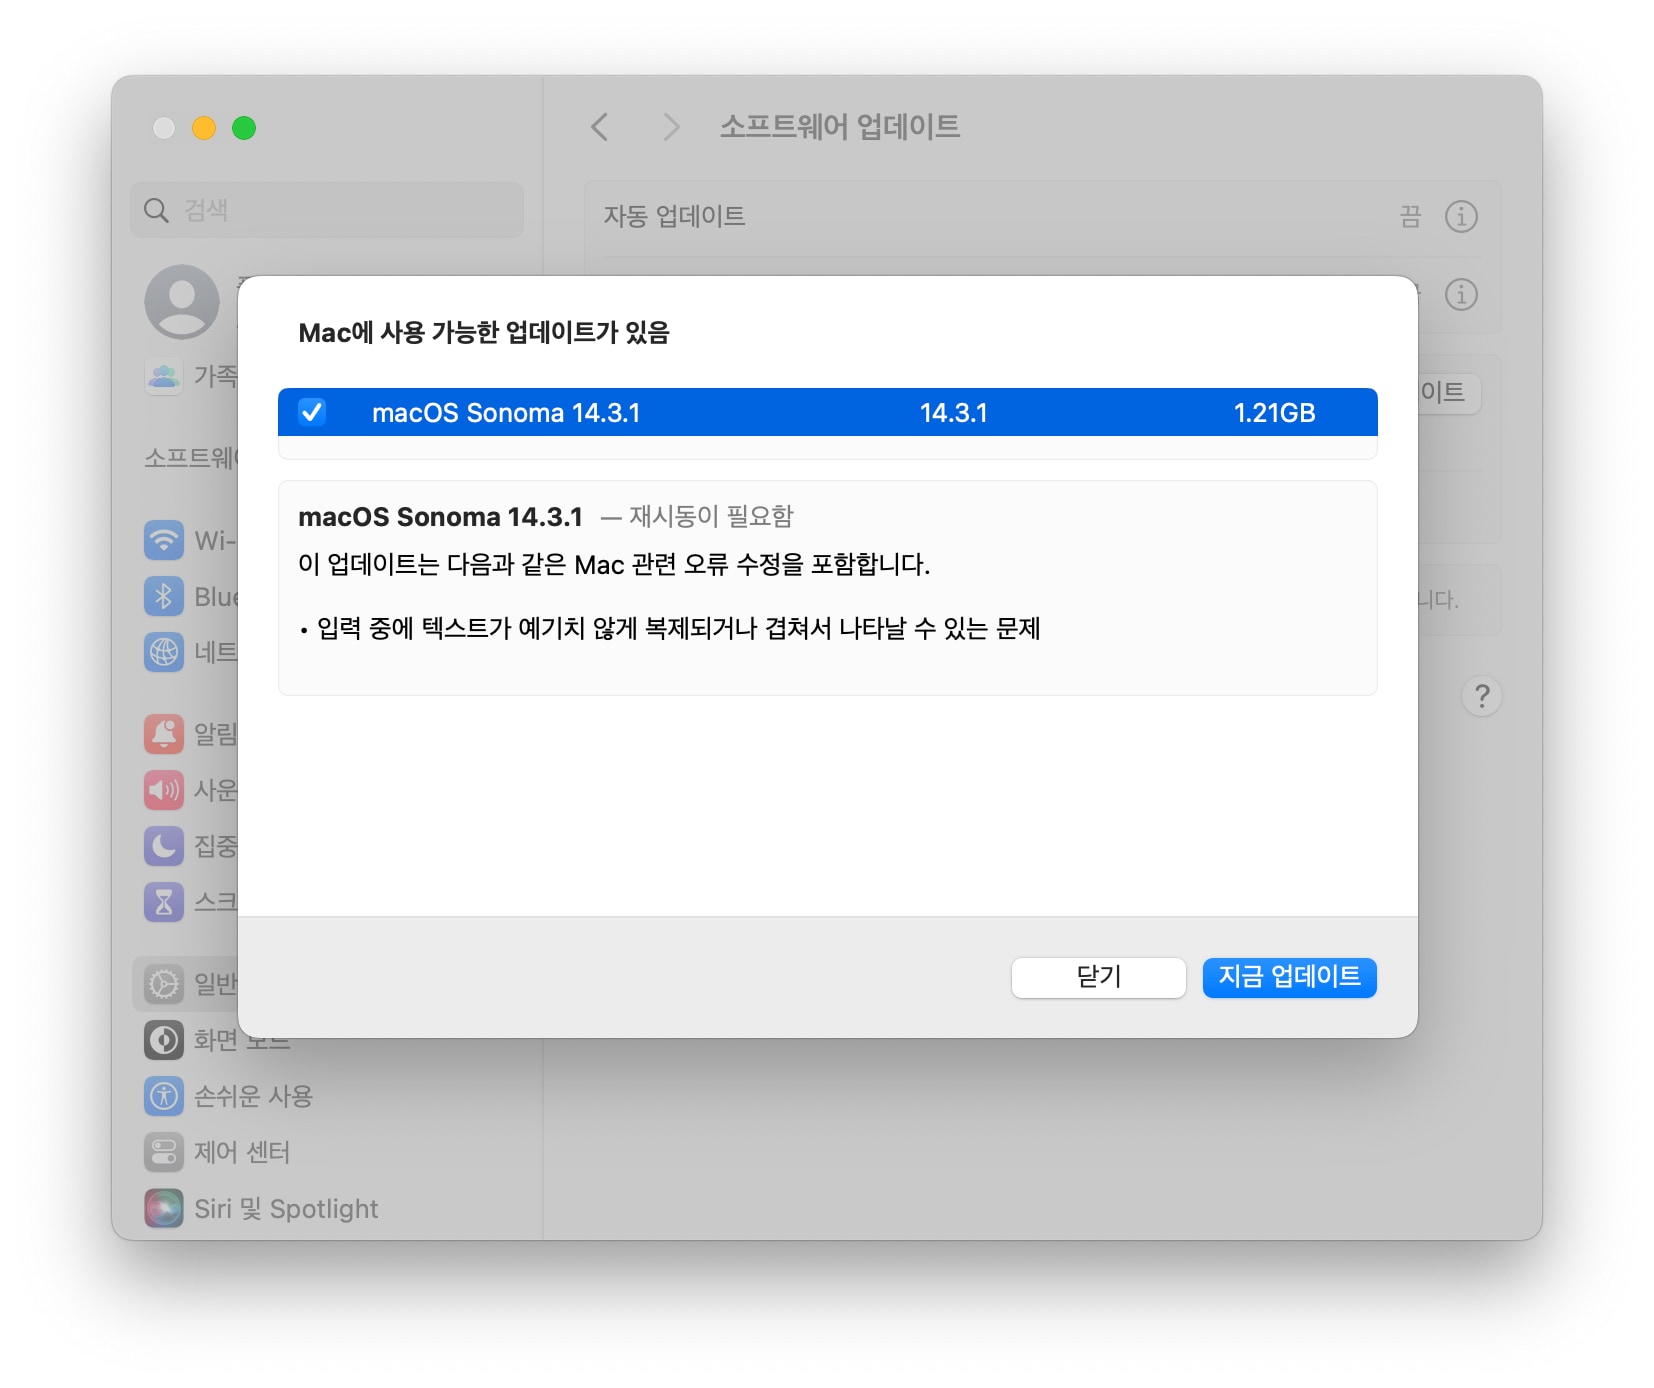 맥OS 소노마 14.3.1 업데이트 파일 크기 및 내용